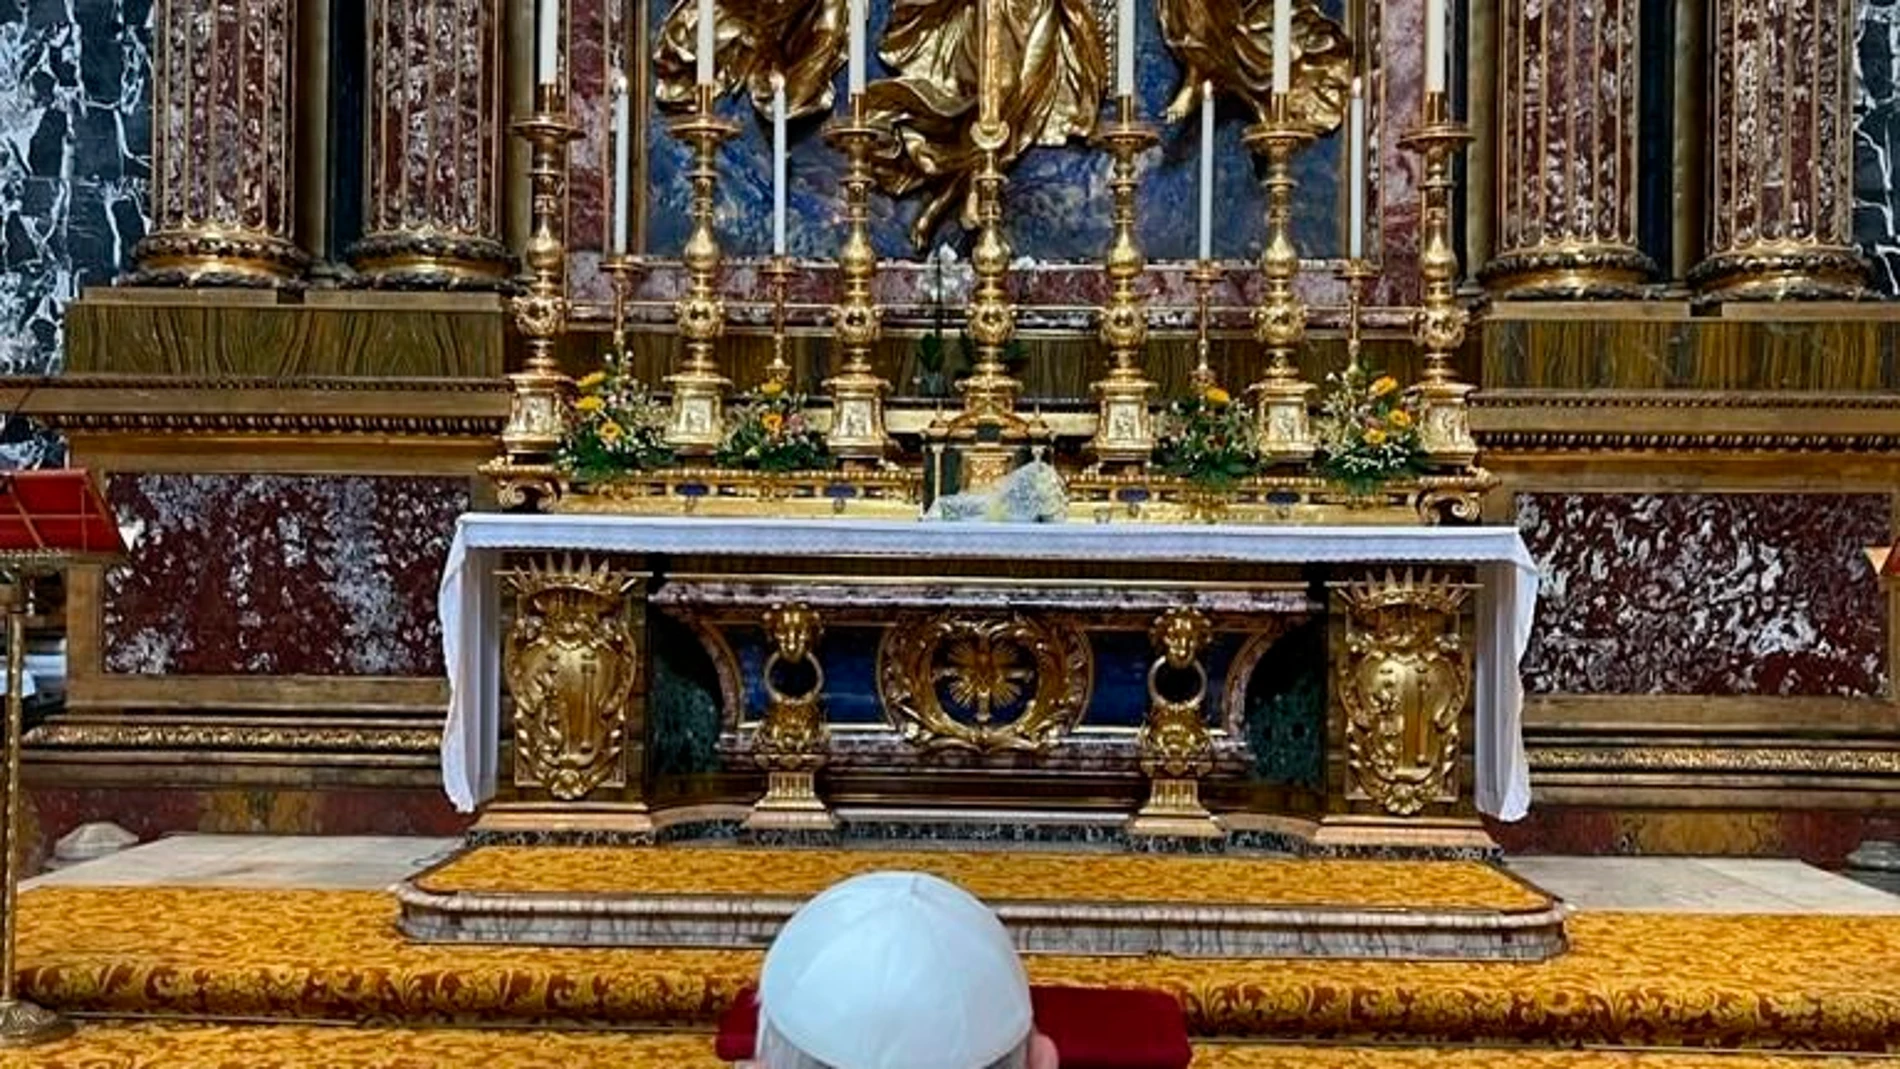 El papa Francisco rezó en la basílica de Santa María la Mayor tras abandonar el hospital Agostino Gemelli de Roma, donde llevaba diez días ingresado tras someterse a una operación de colon